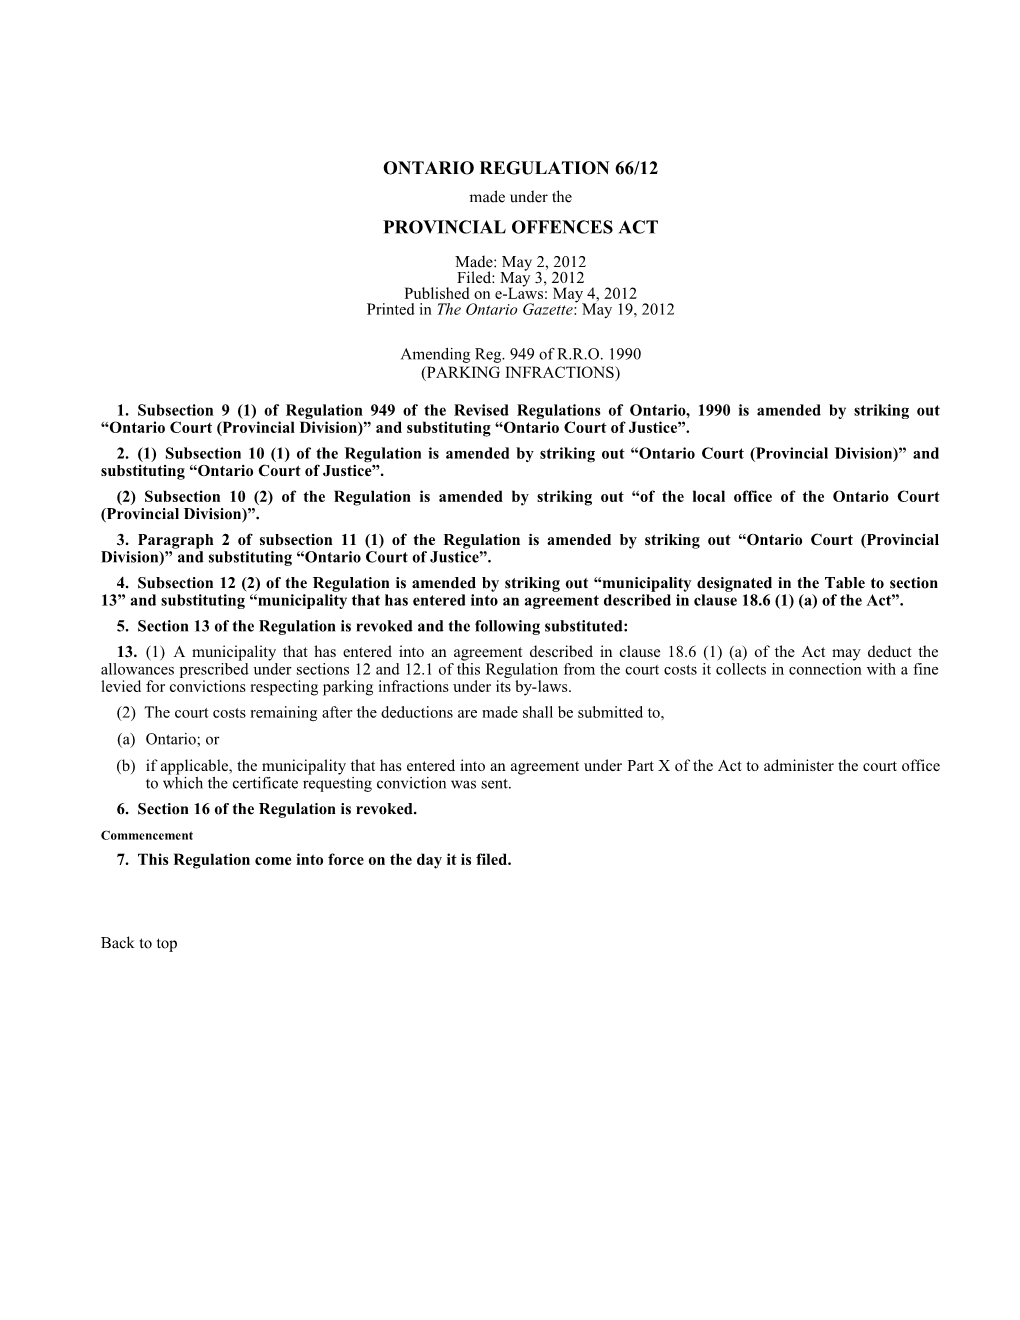 PROVINCIAL OFFENCES ACT - O. Reg. 66/12